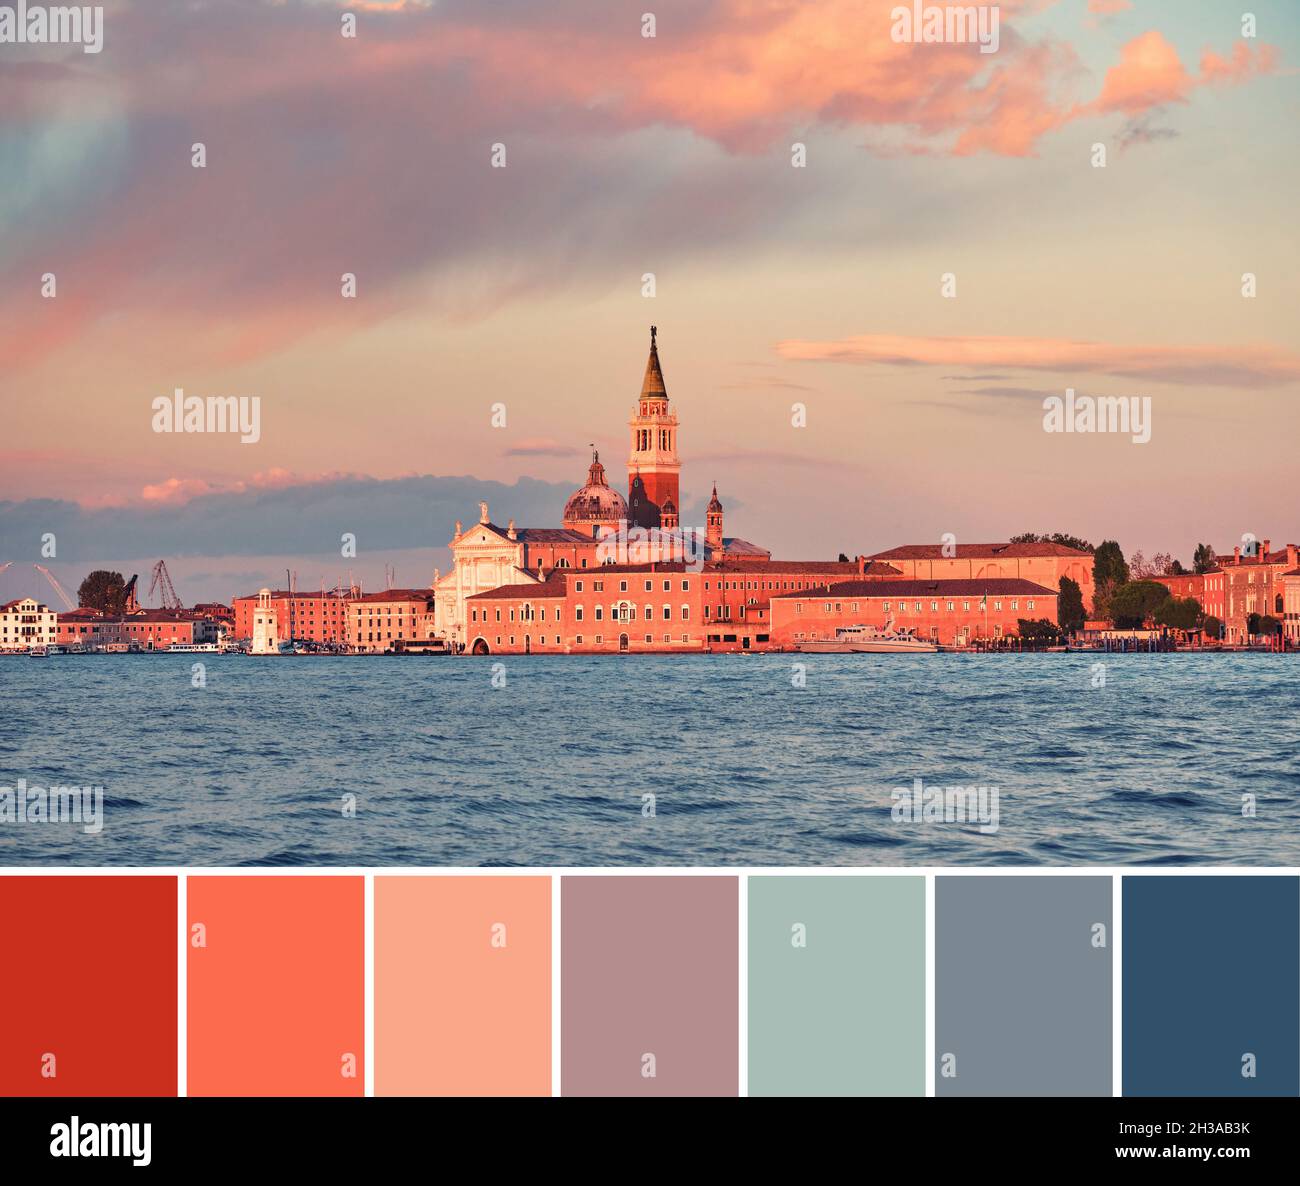 Palette de couleurs assorties de l'image de coucher de soleil de l'église de San Giorgio Maggiore sur l'île de San Giorgio à Venise, Italie. Banque D'Images